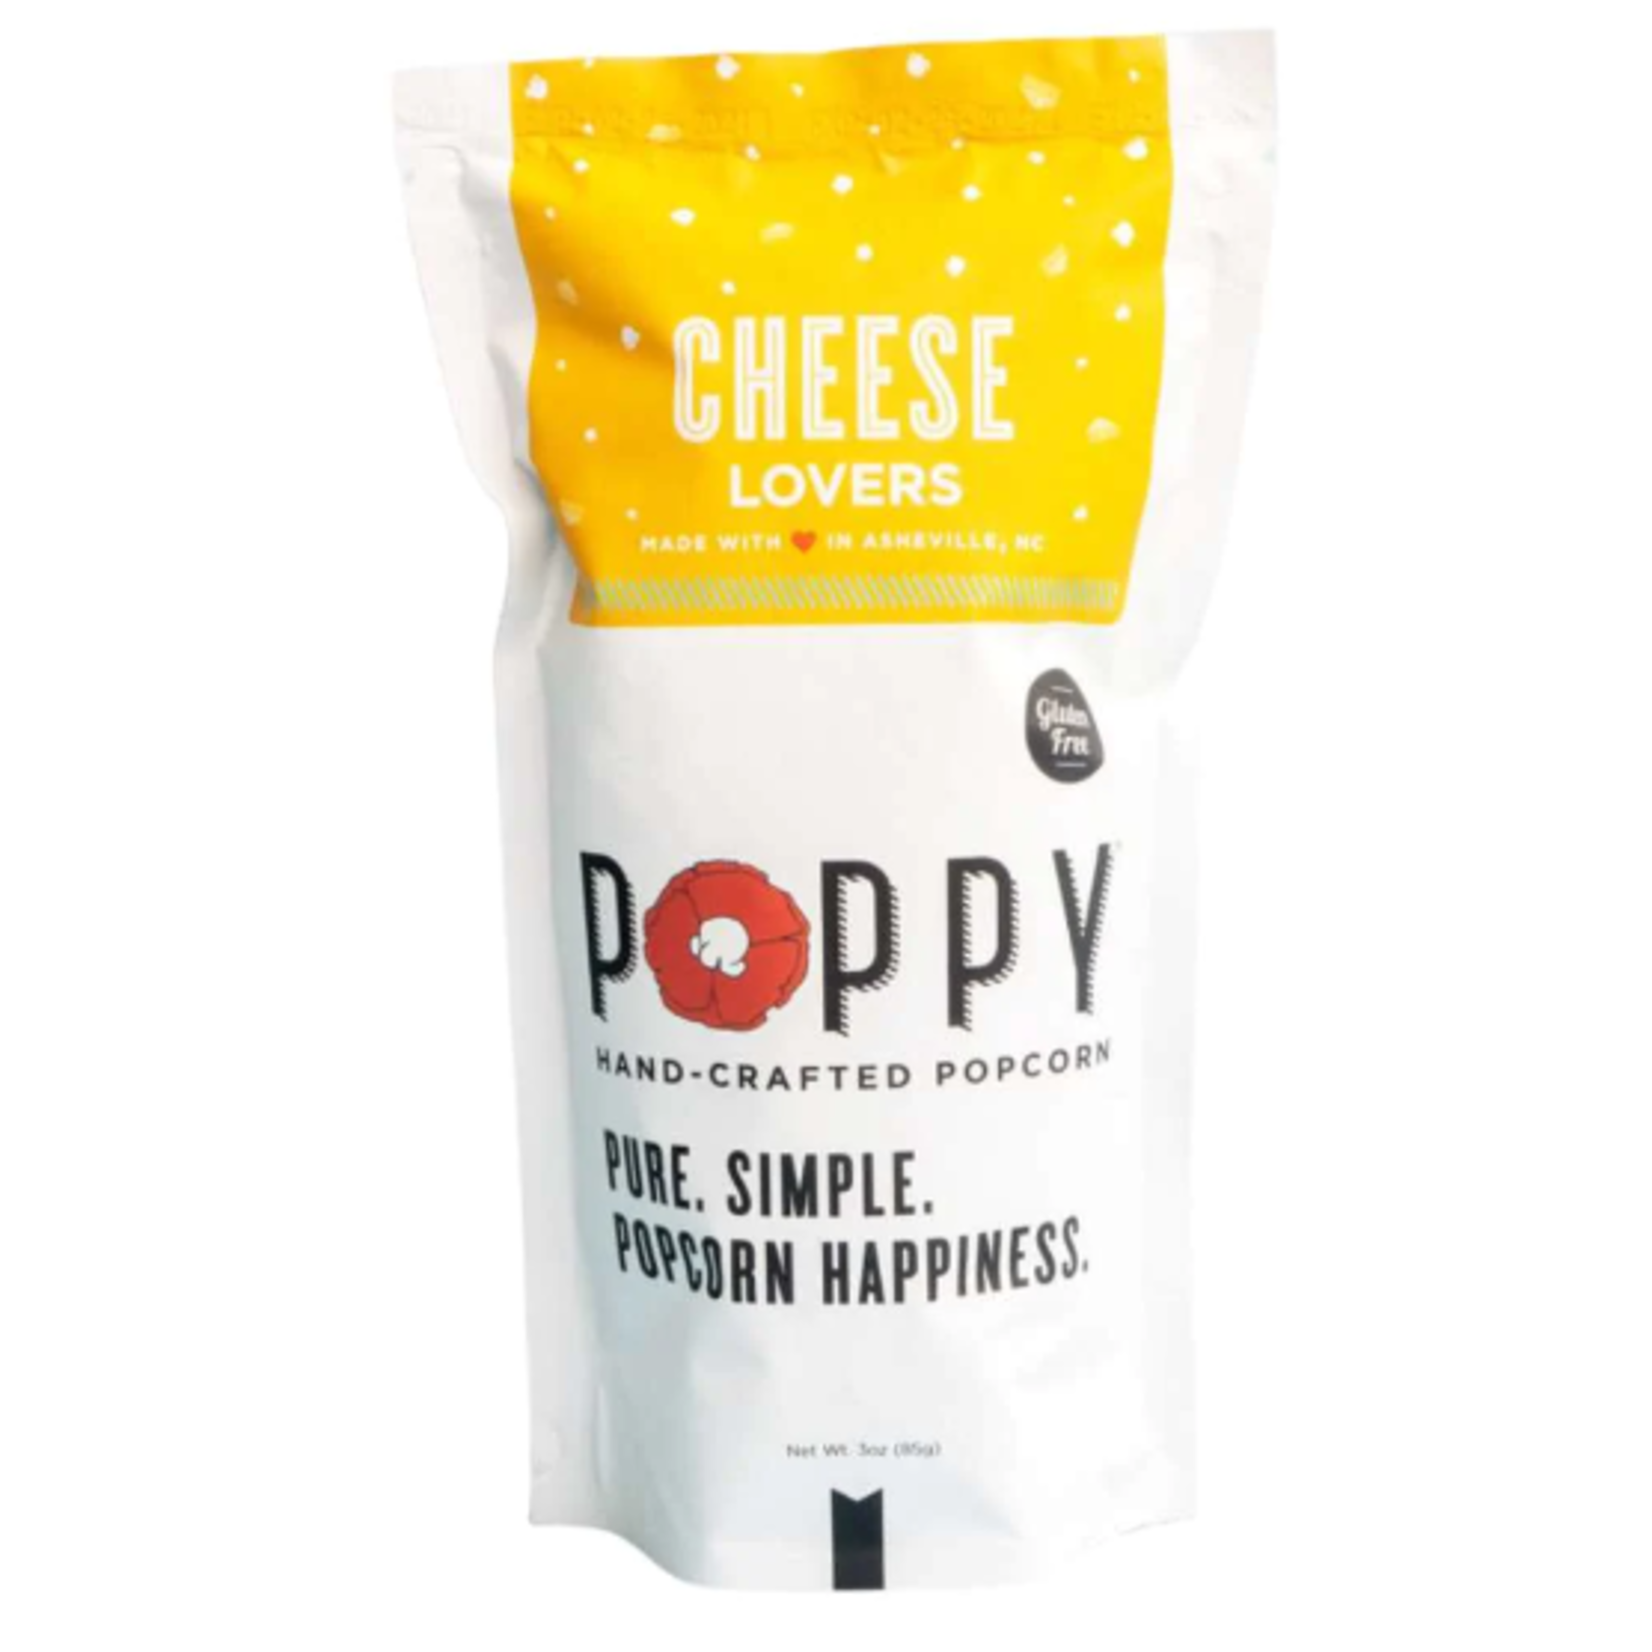 Poppy Poppy Popcorn - Cheese Lovers